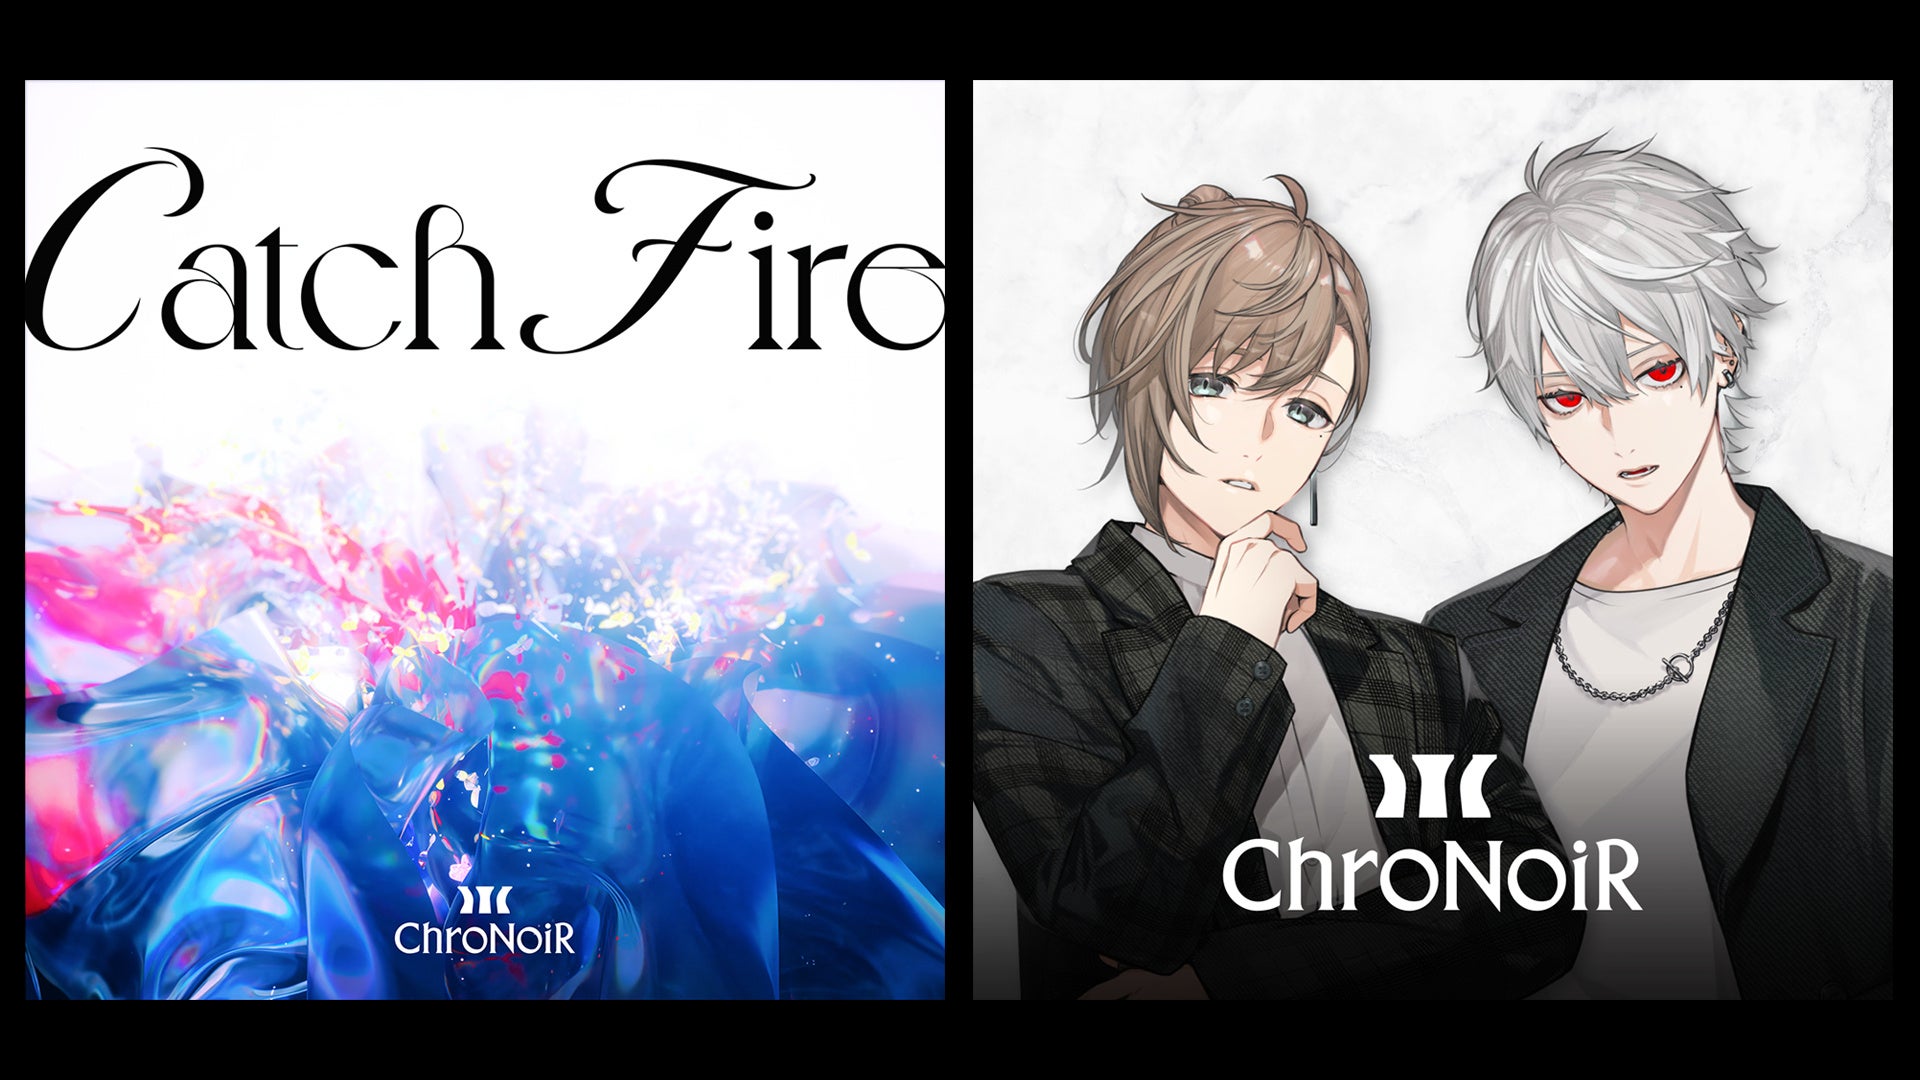 「ChroNoiR」、新曲『Catch Fire』のデジタルリリース開始＆ミュージックビデオ公開！さらに新たなアーティスト写真を公開！